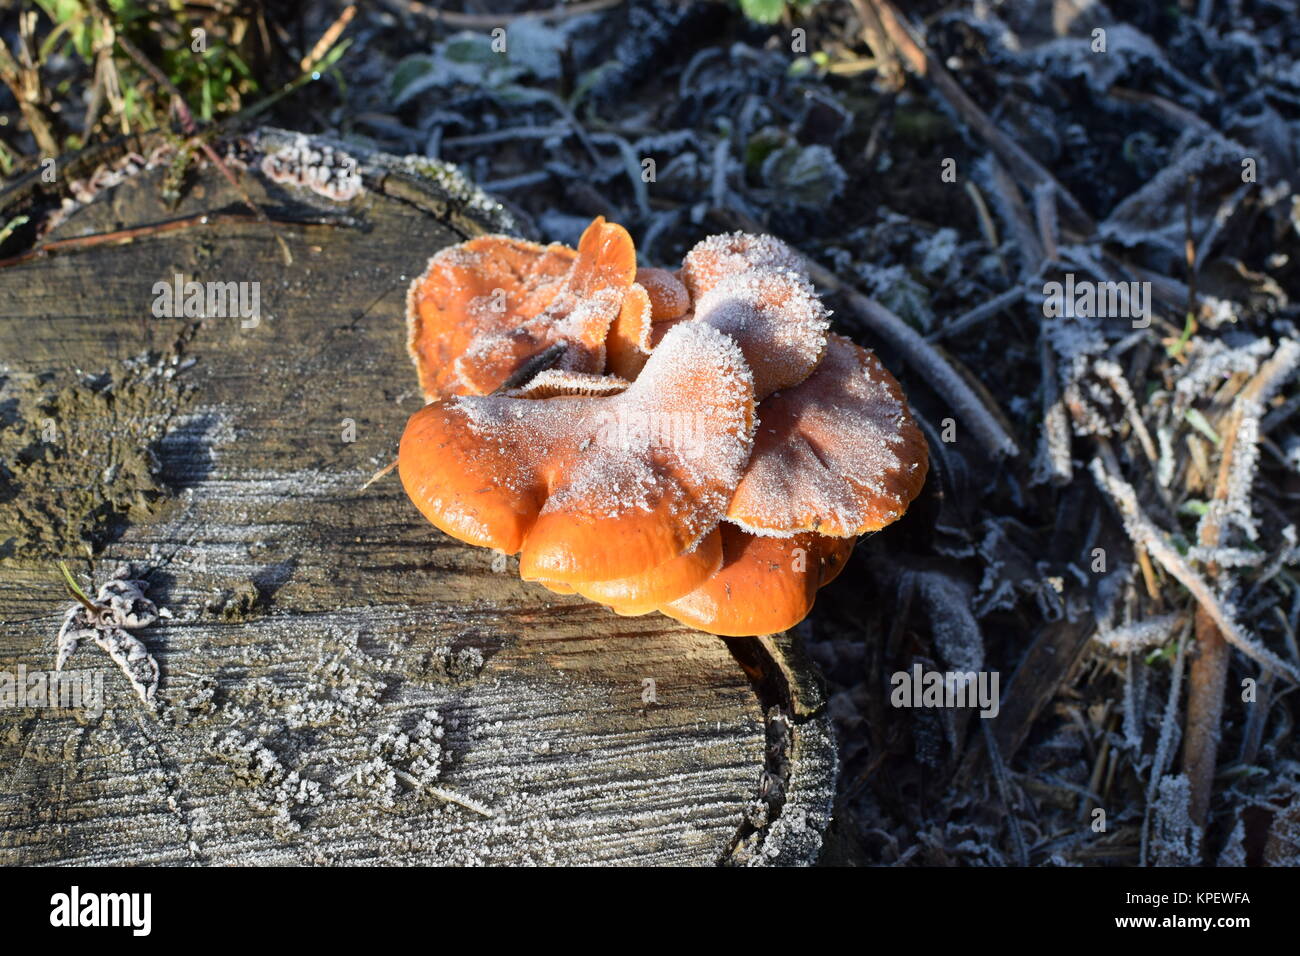 Orange mushrooms on a stub Stock Photo